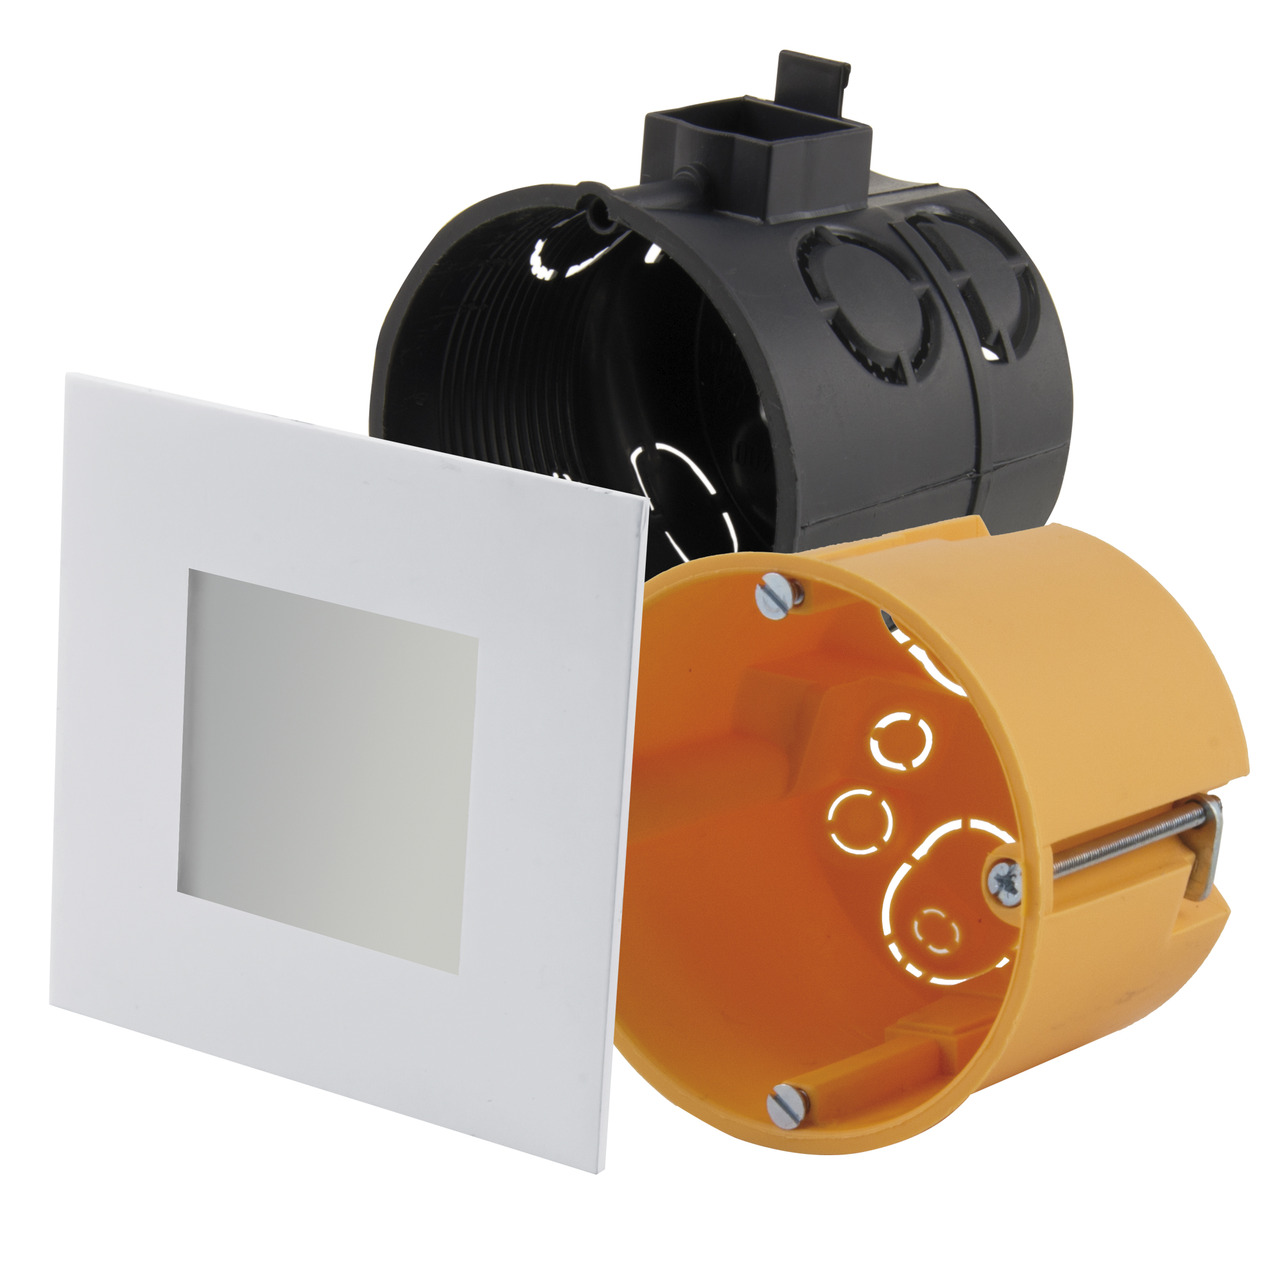 HEITRONIC 2-W-LED-Einbaupanel Nizza- passt in Schalter- und Hohlwanddosen- eckig- weiss- IP20 unter Beleuchtung